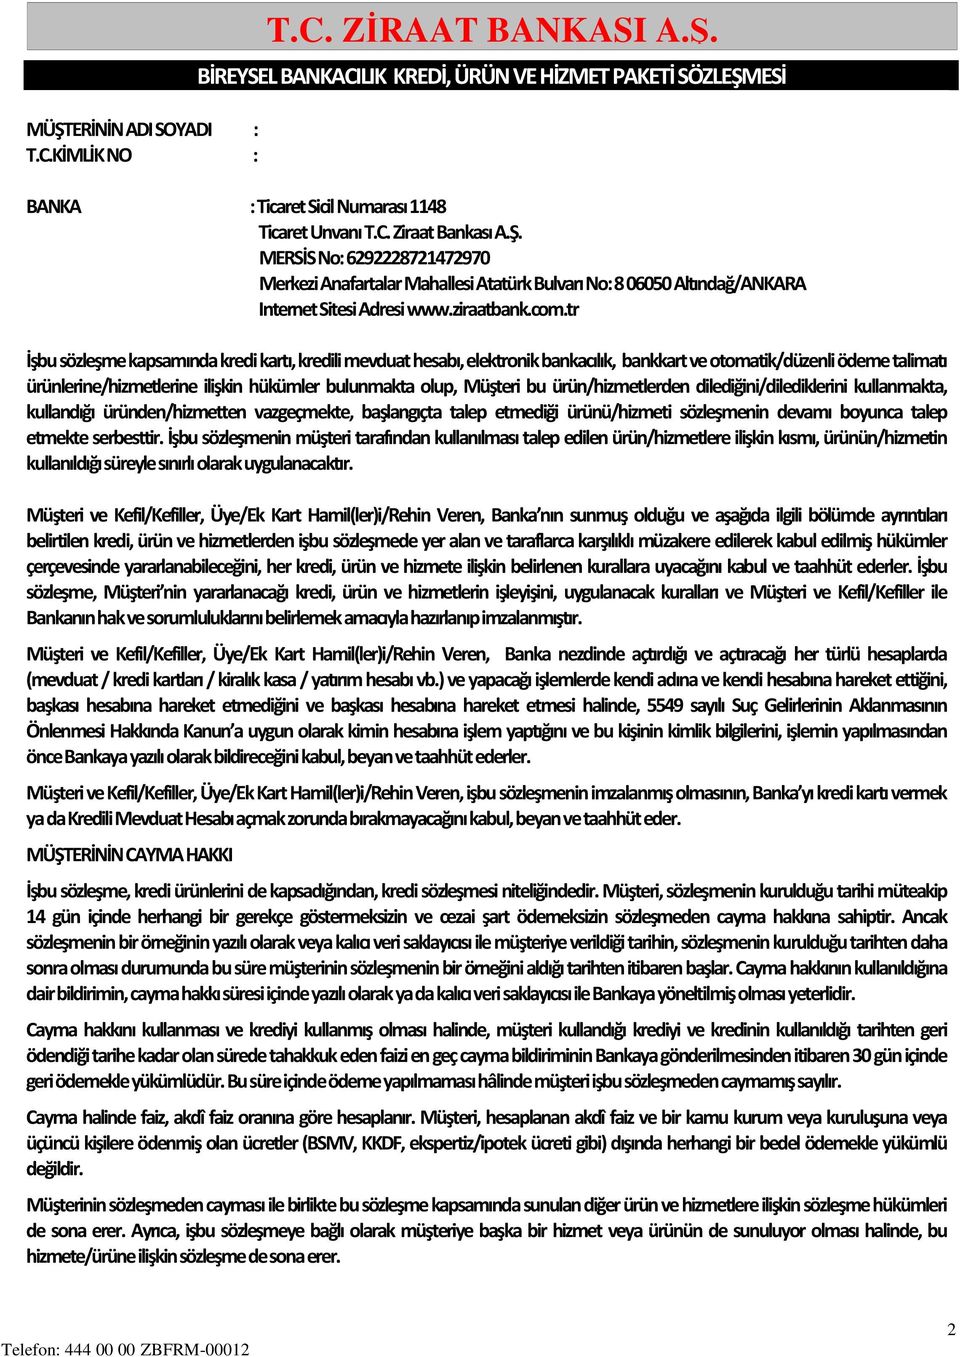 T.C. ZİRAAT BANKASI A.Ş. - PDF Ücretsiz indirin